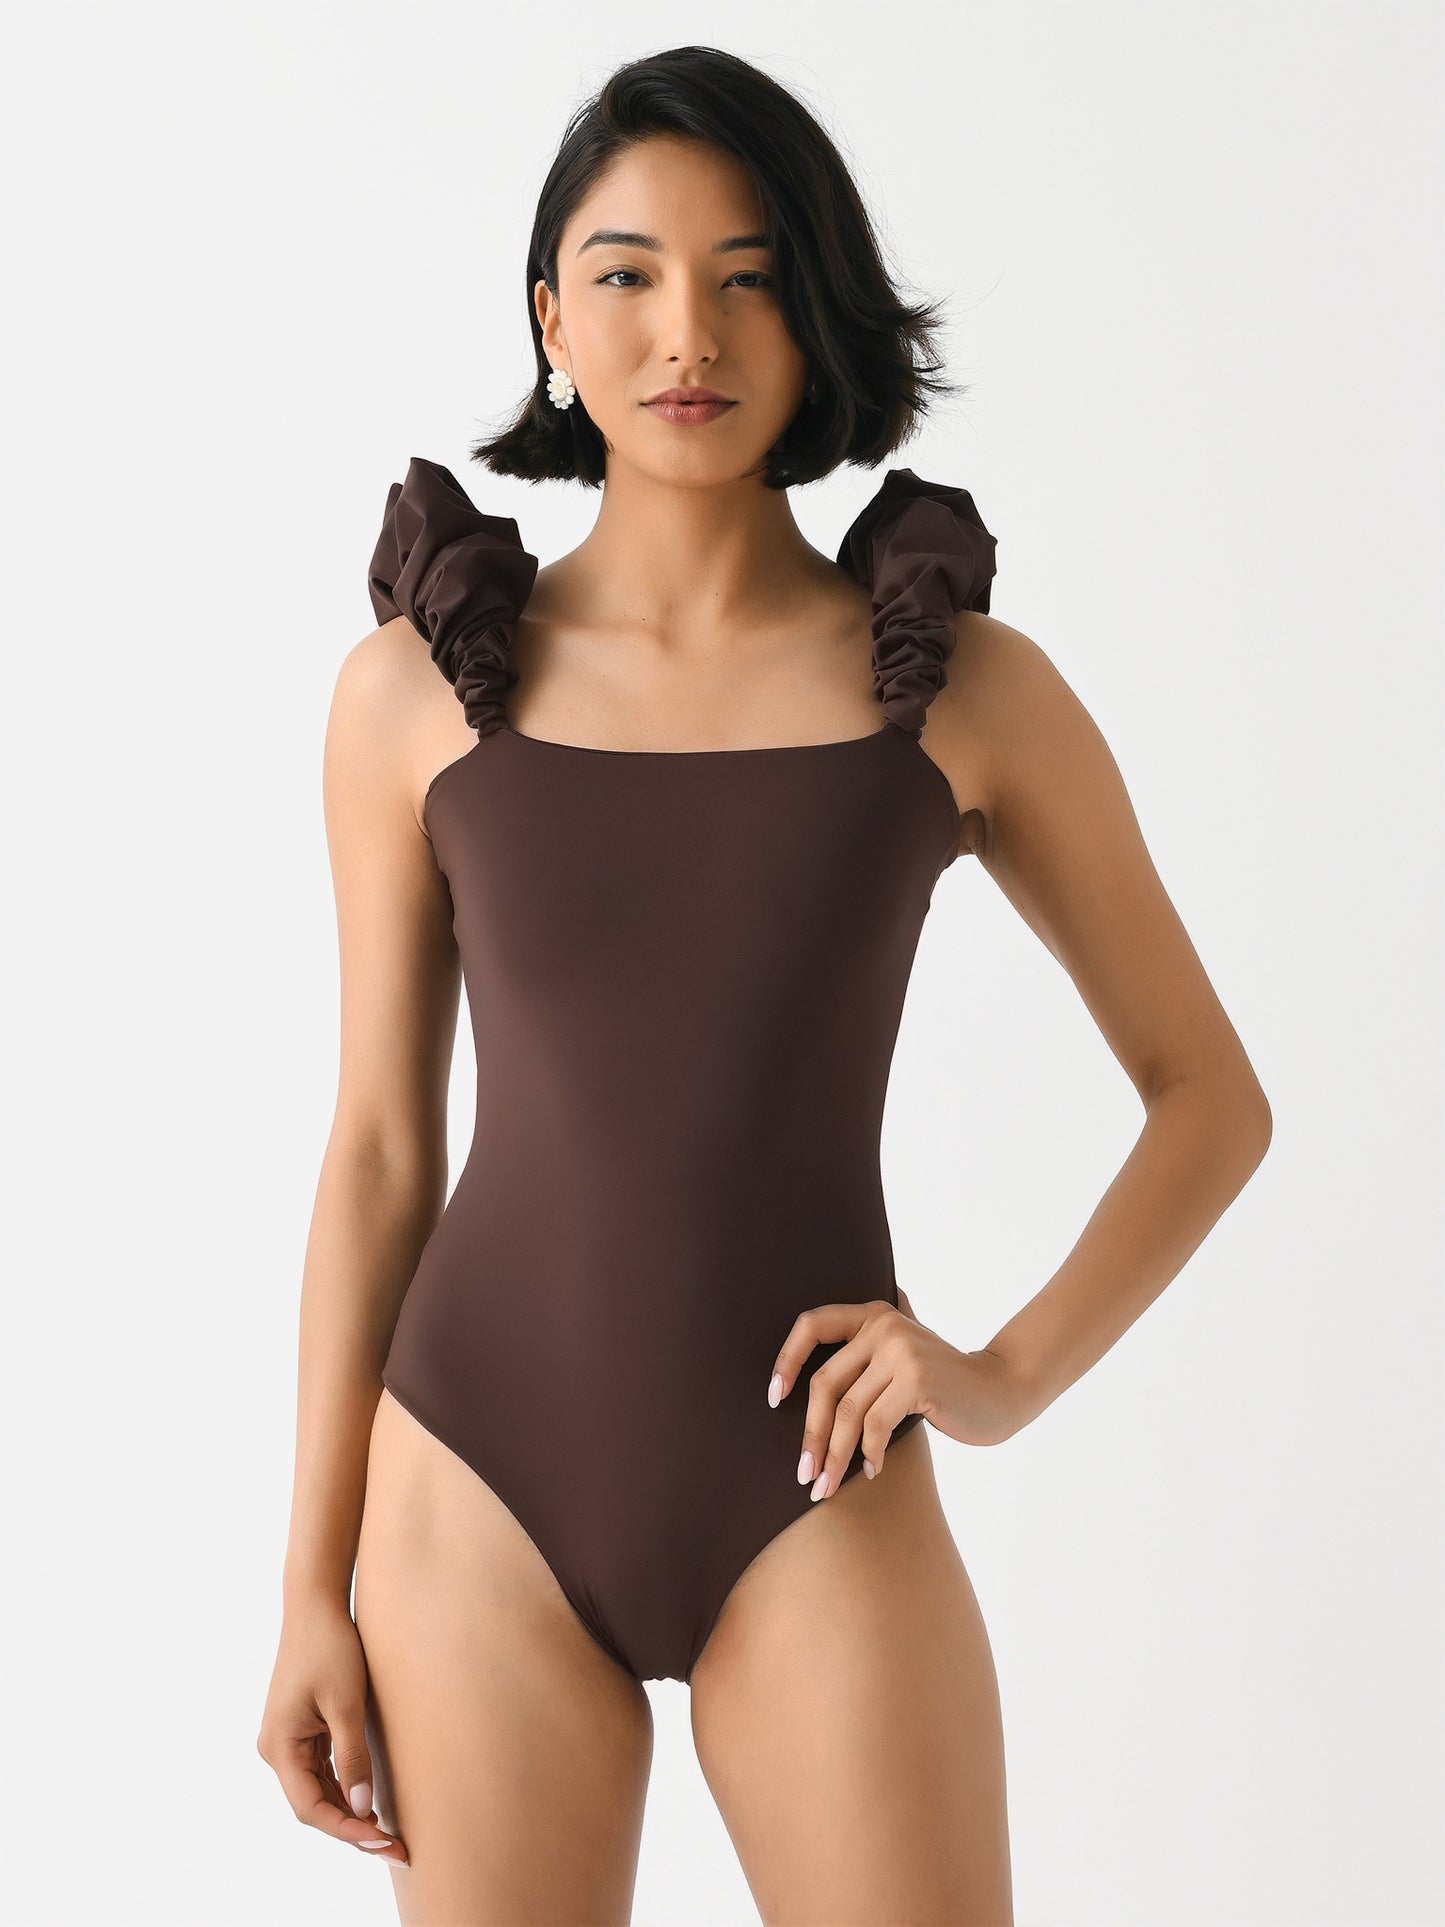 Maygel Coronel Women's Denise One-Piece Swimsuit